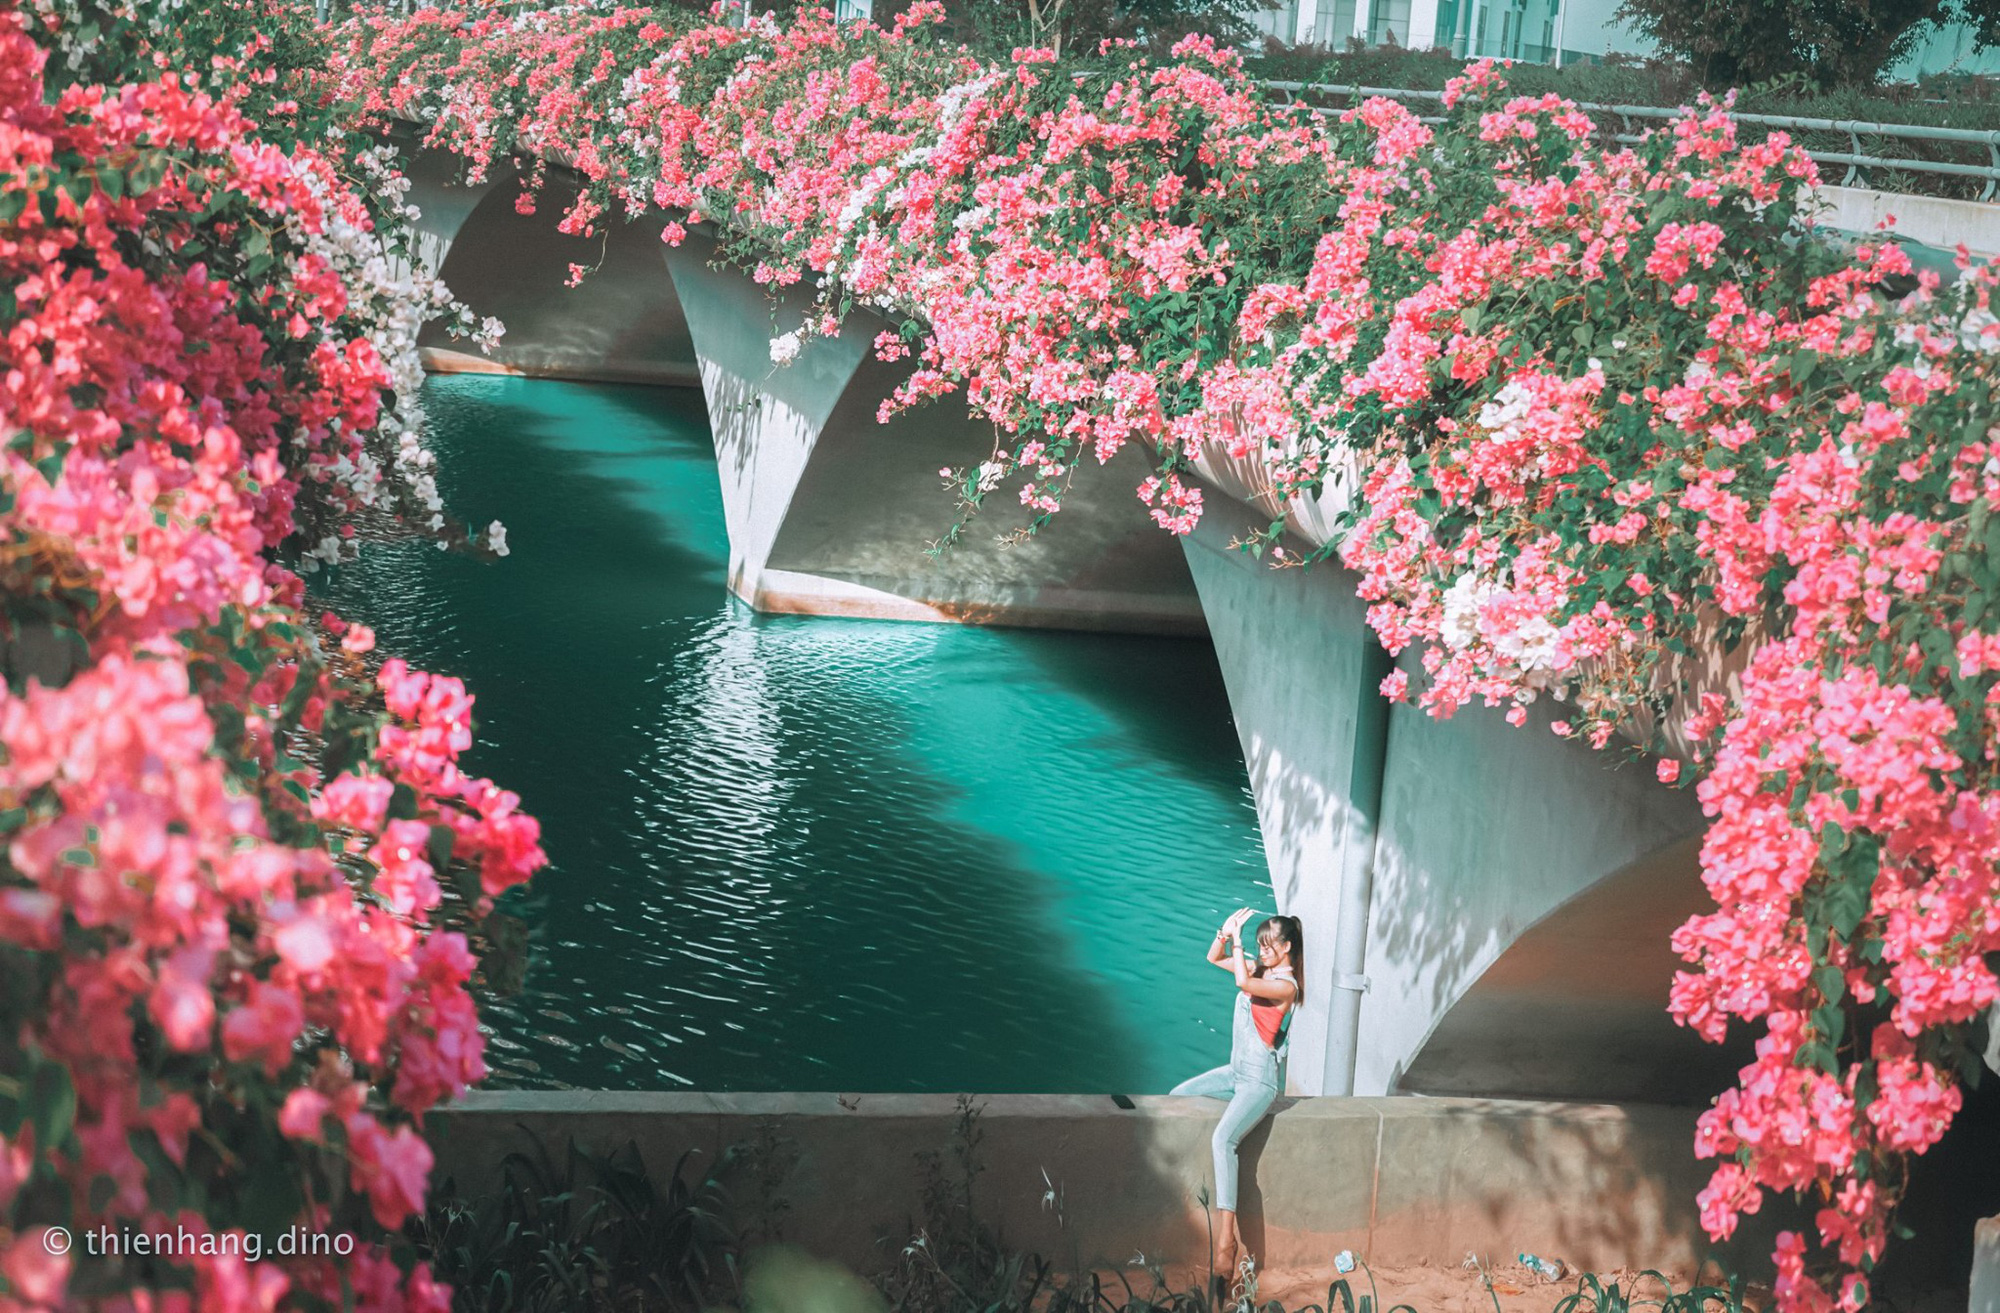 Cây cầu Thuỷ Tiên này có góc chụp đặc biệt với mặt nước long lanh bên dưới và 2 hàng hoa giấy phủ kín phía trên.